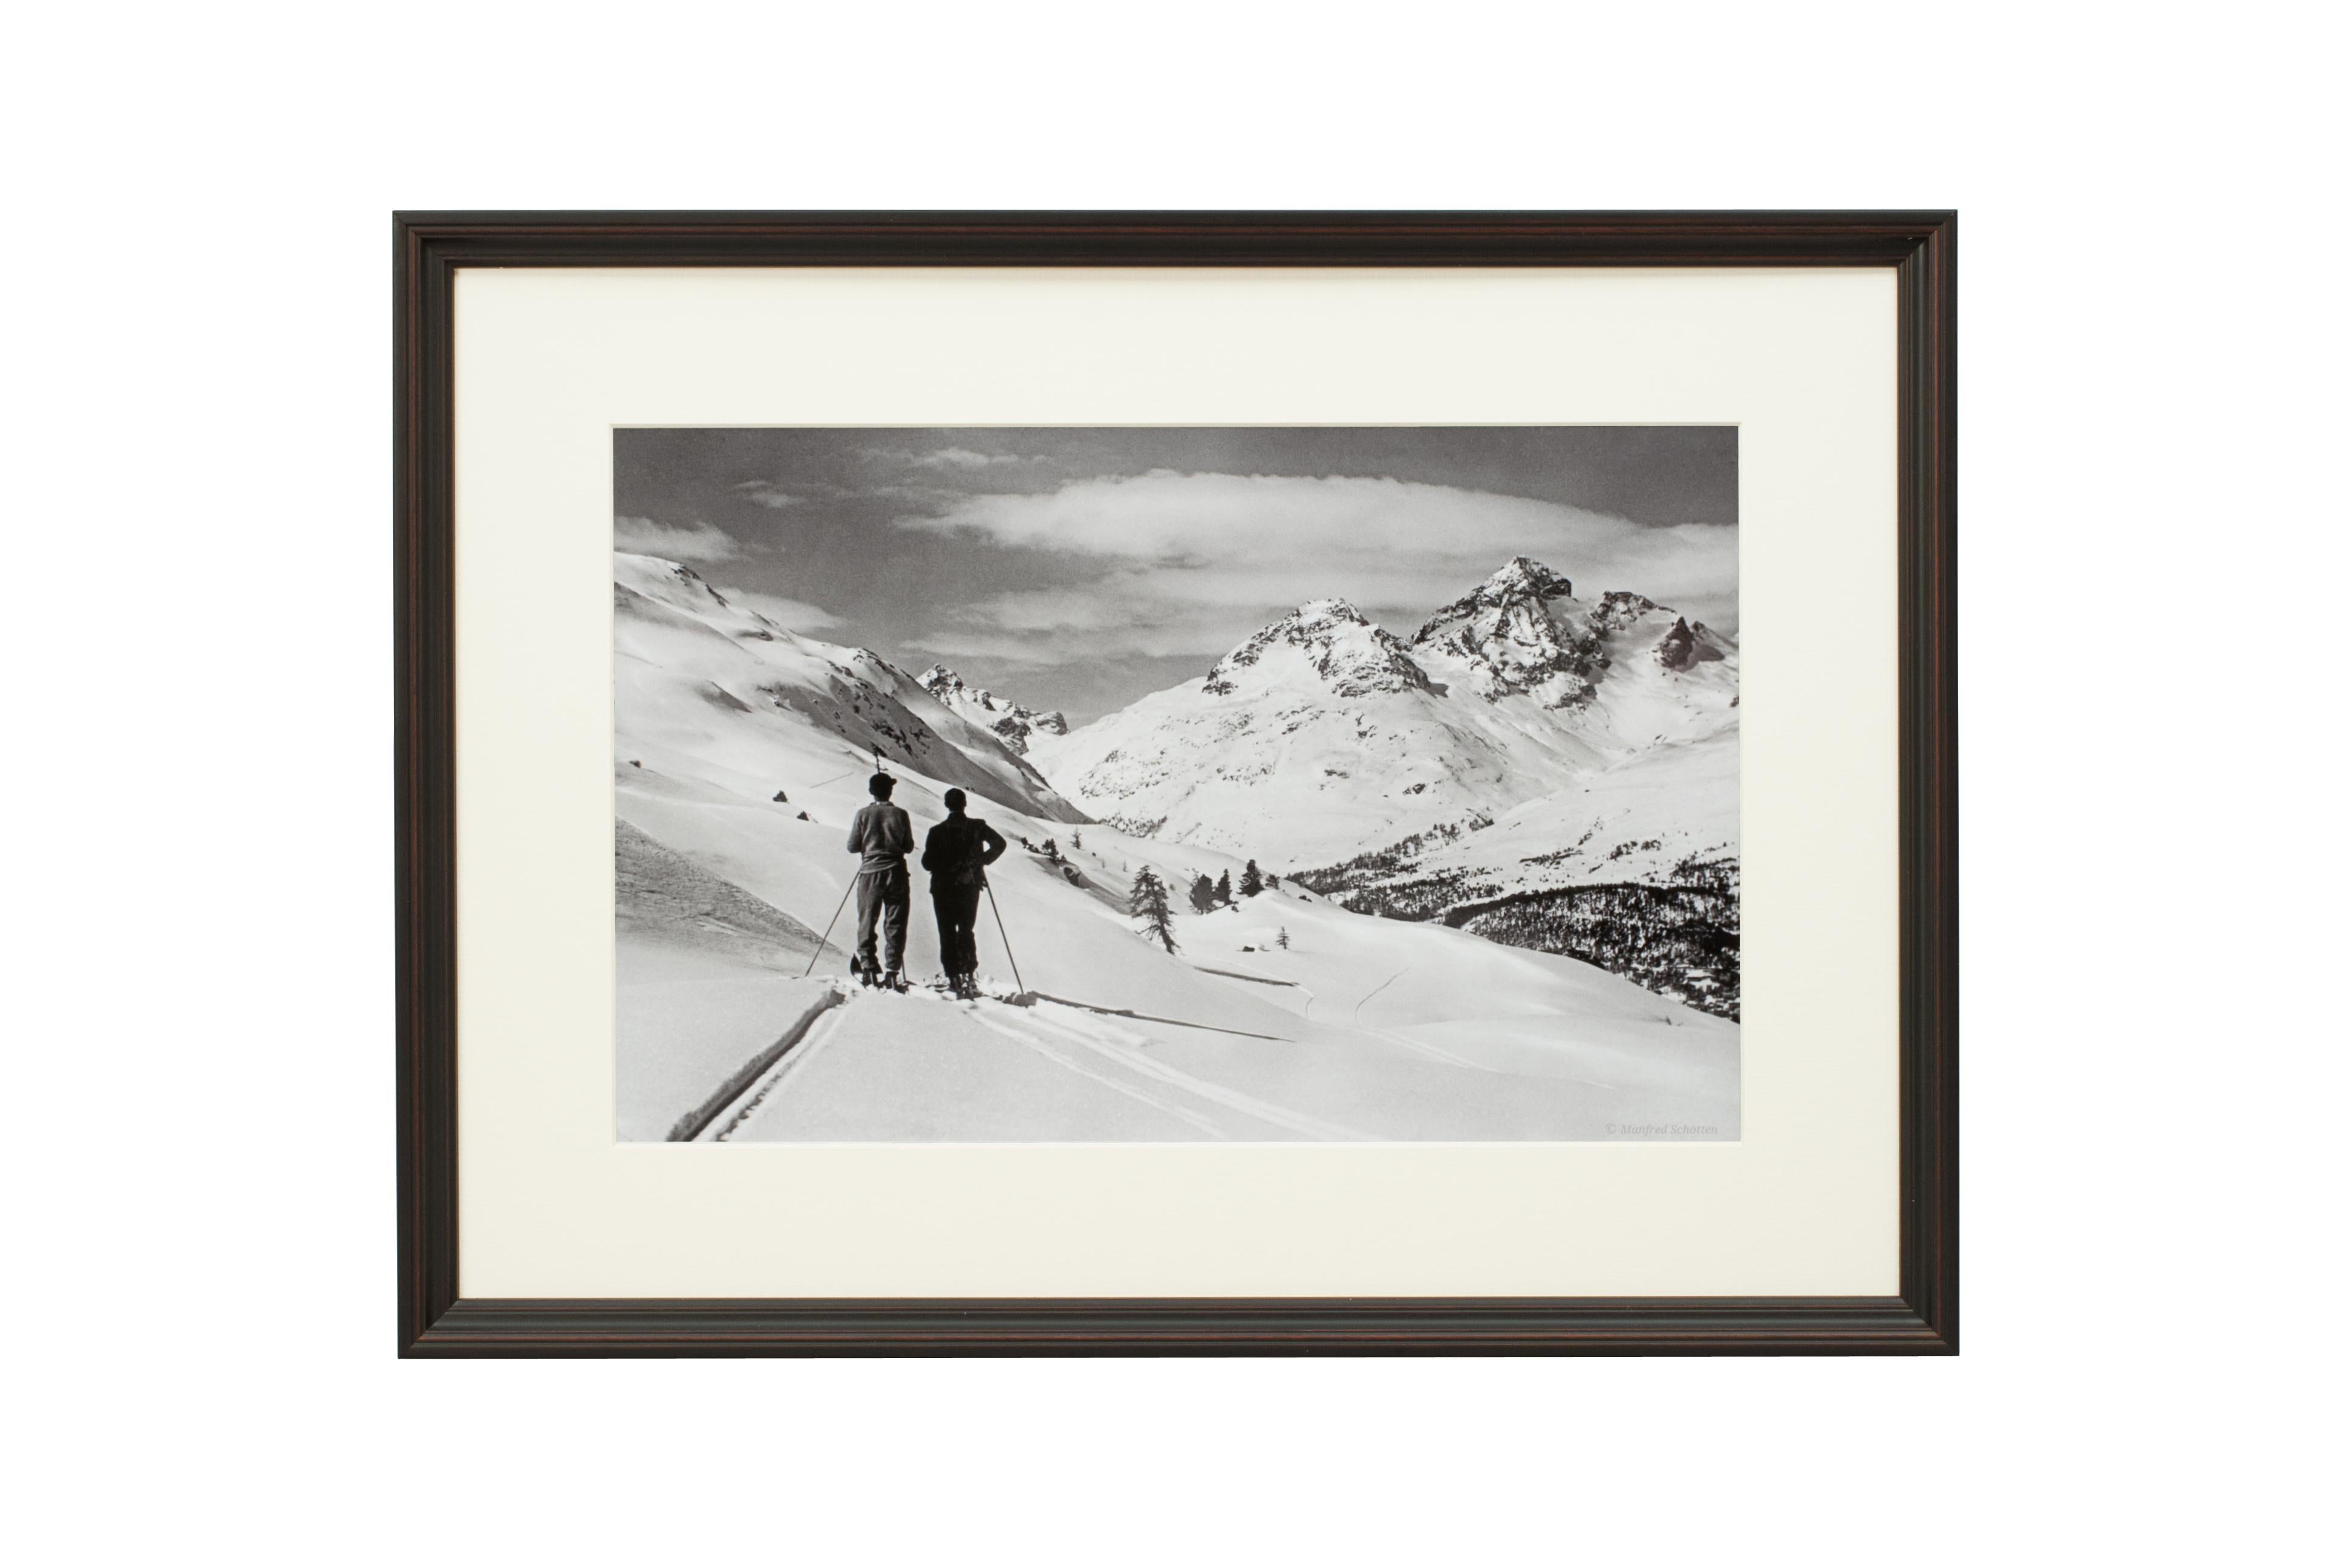 Alpinskifotografie, „Panoramikansicht“, aufgenommen nach einer Originalfotografie aus den 1930er Jahren im Angebot 3